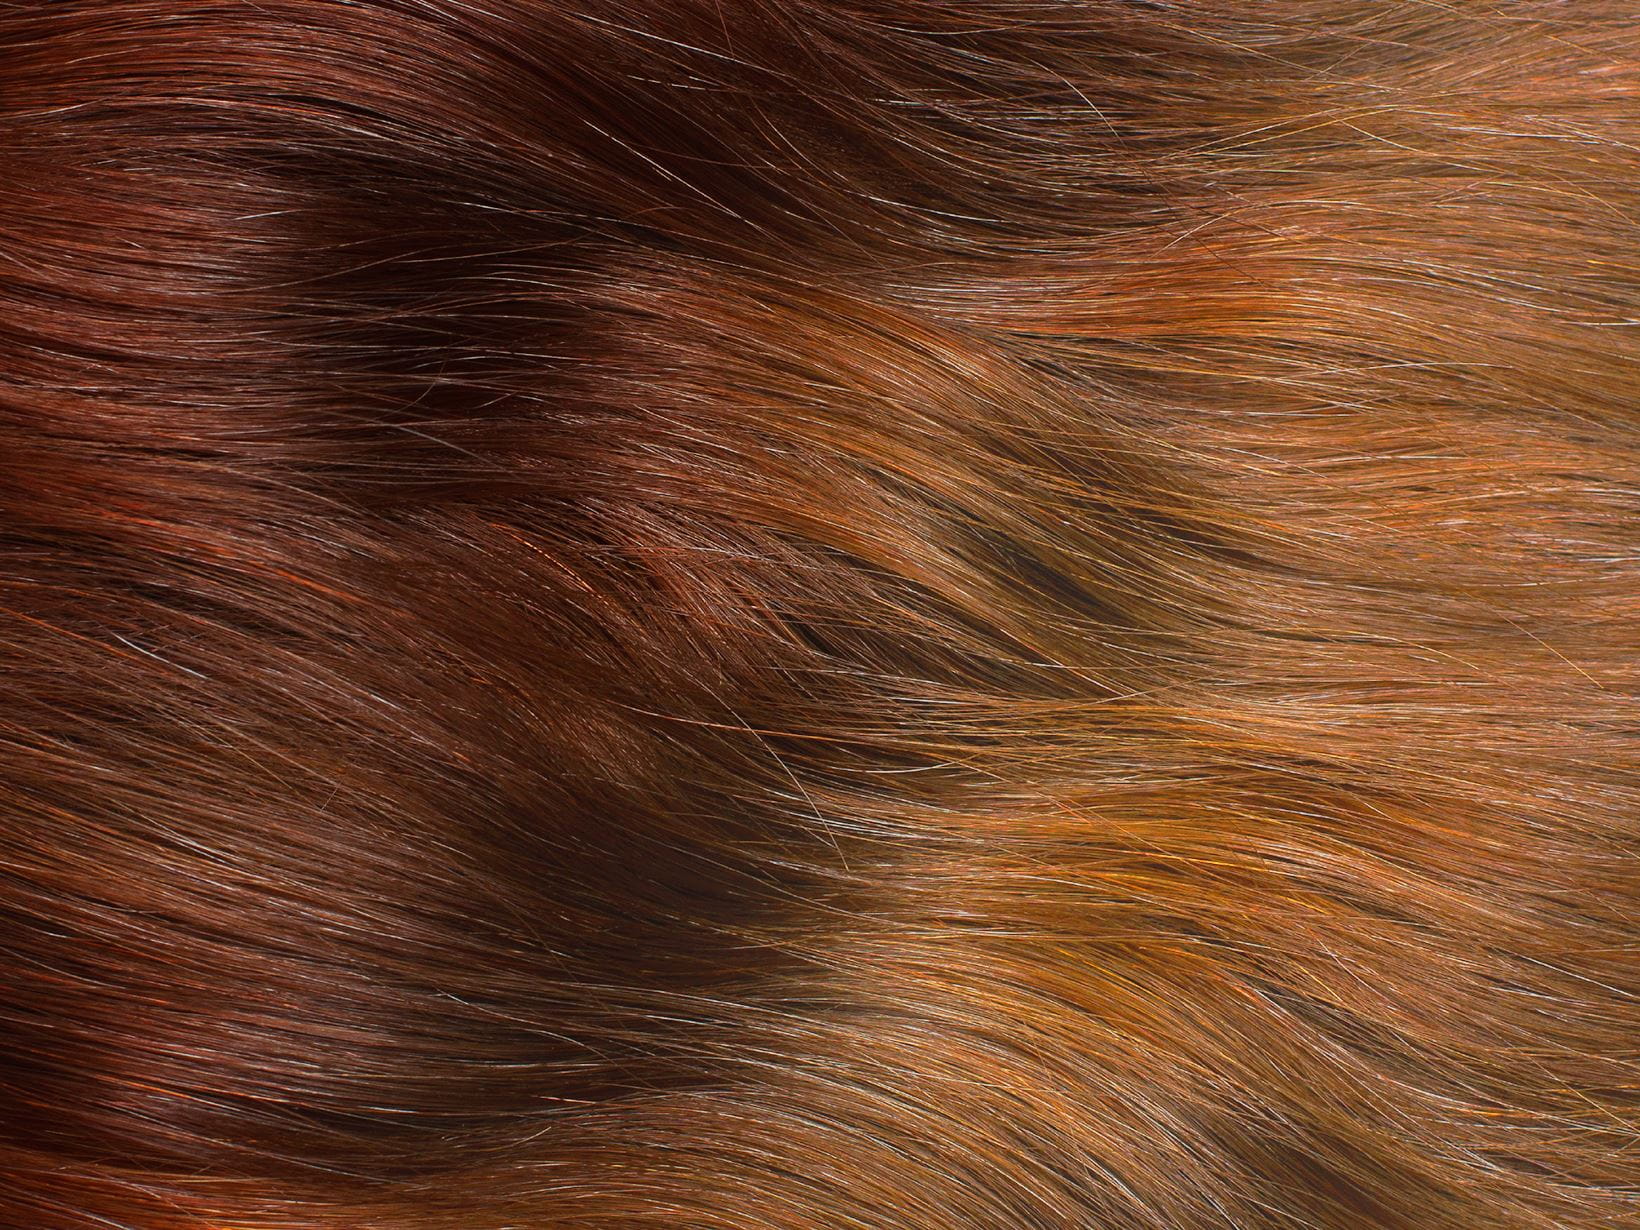 Ombré Hair selber färben rot-blond-braun